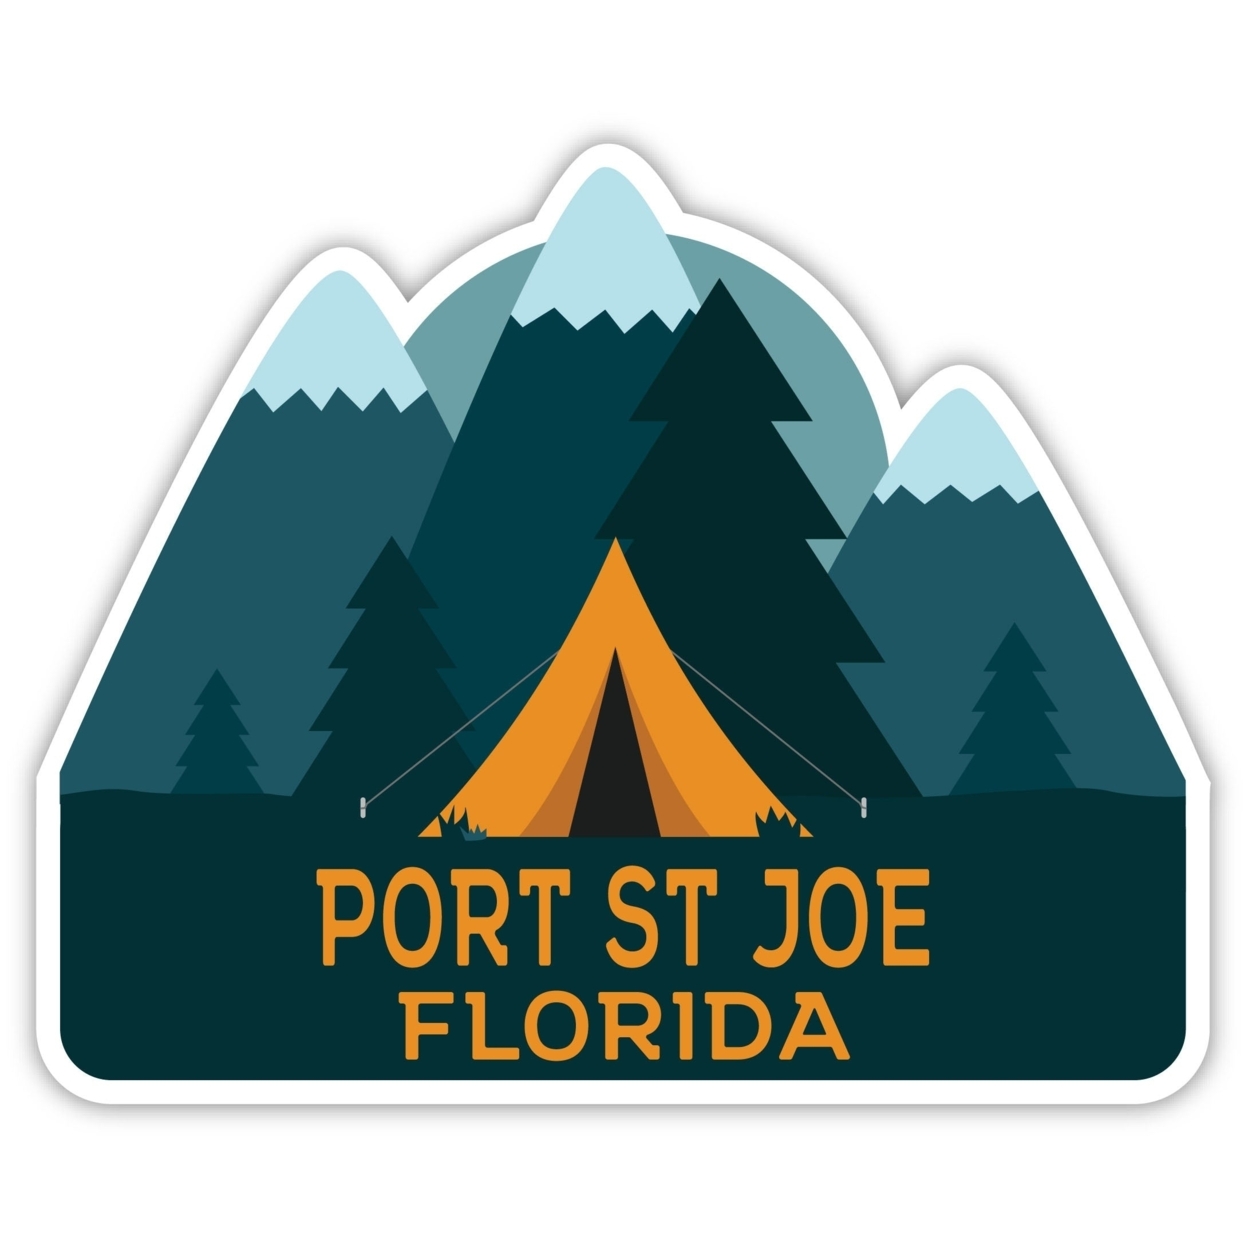 Port St Joe Florida Souvenir Decorative Stickers (Choose Theme And Size) - Single Unit, 2-Inch, Tent